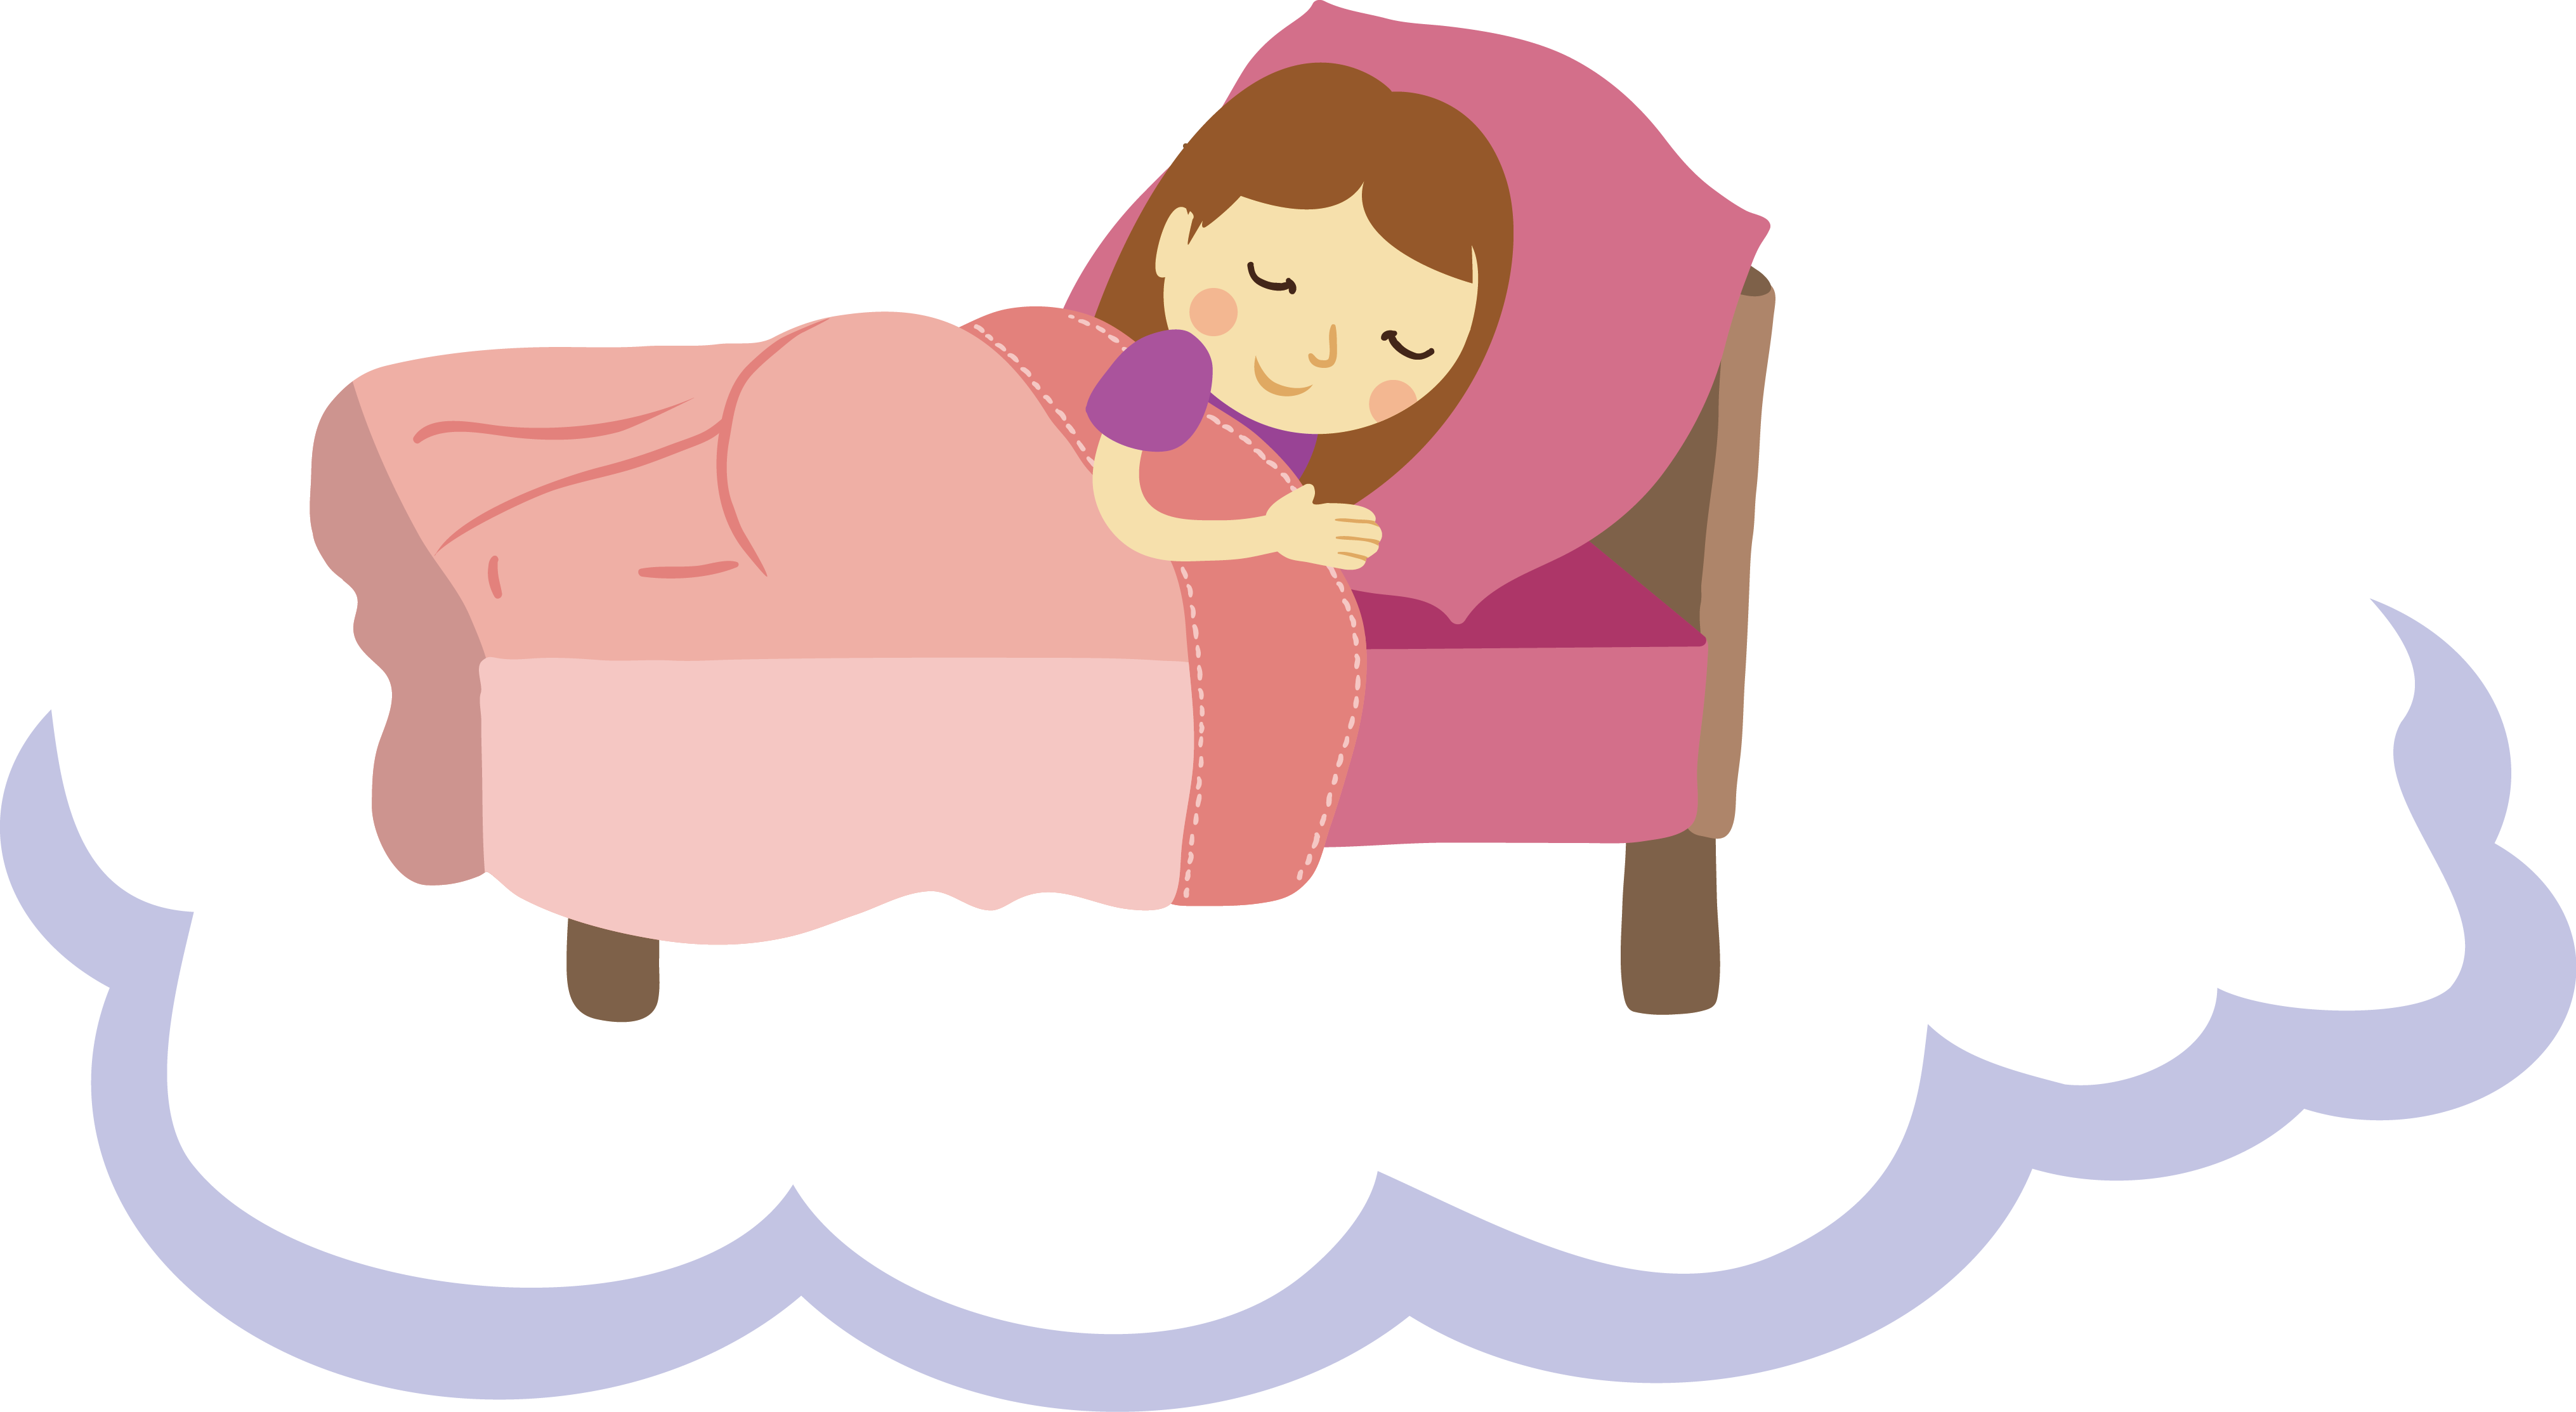 4,睡眠关夏天昼长夜短,且夜间温度也较高,导致一些人夜间休息得不好